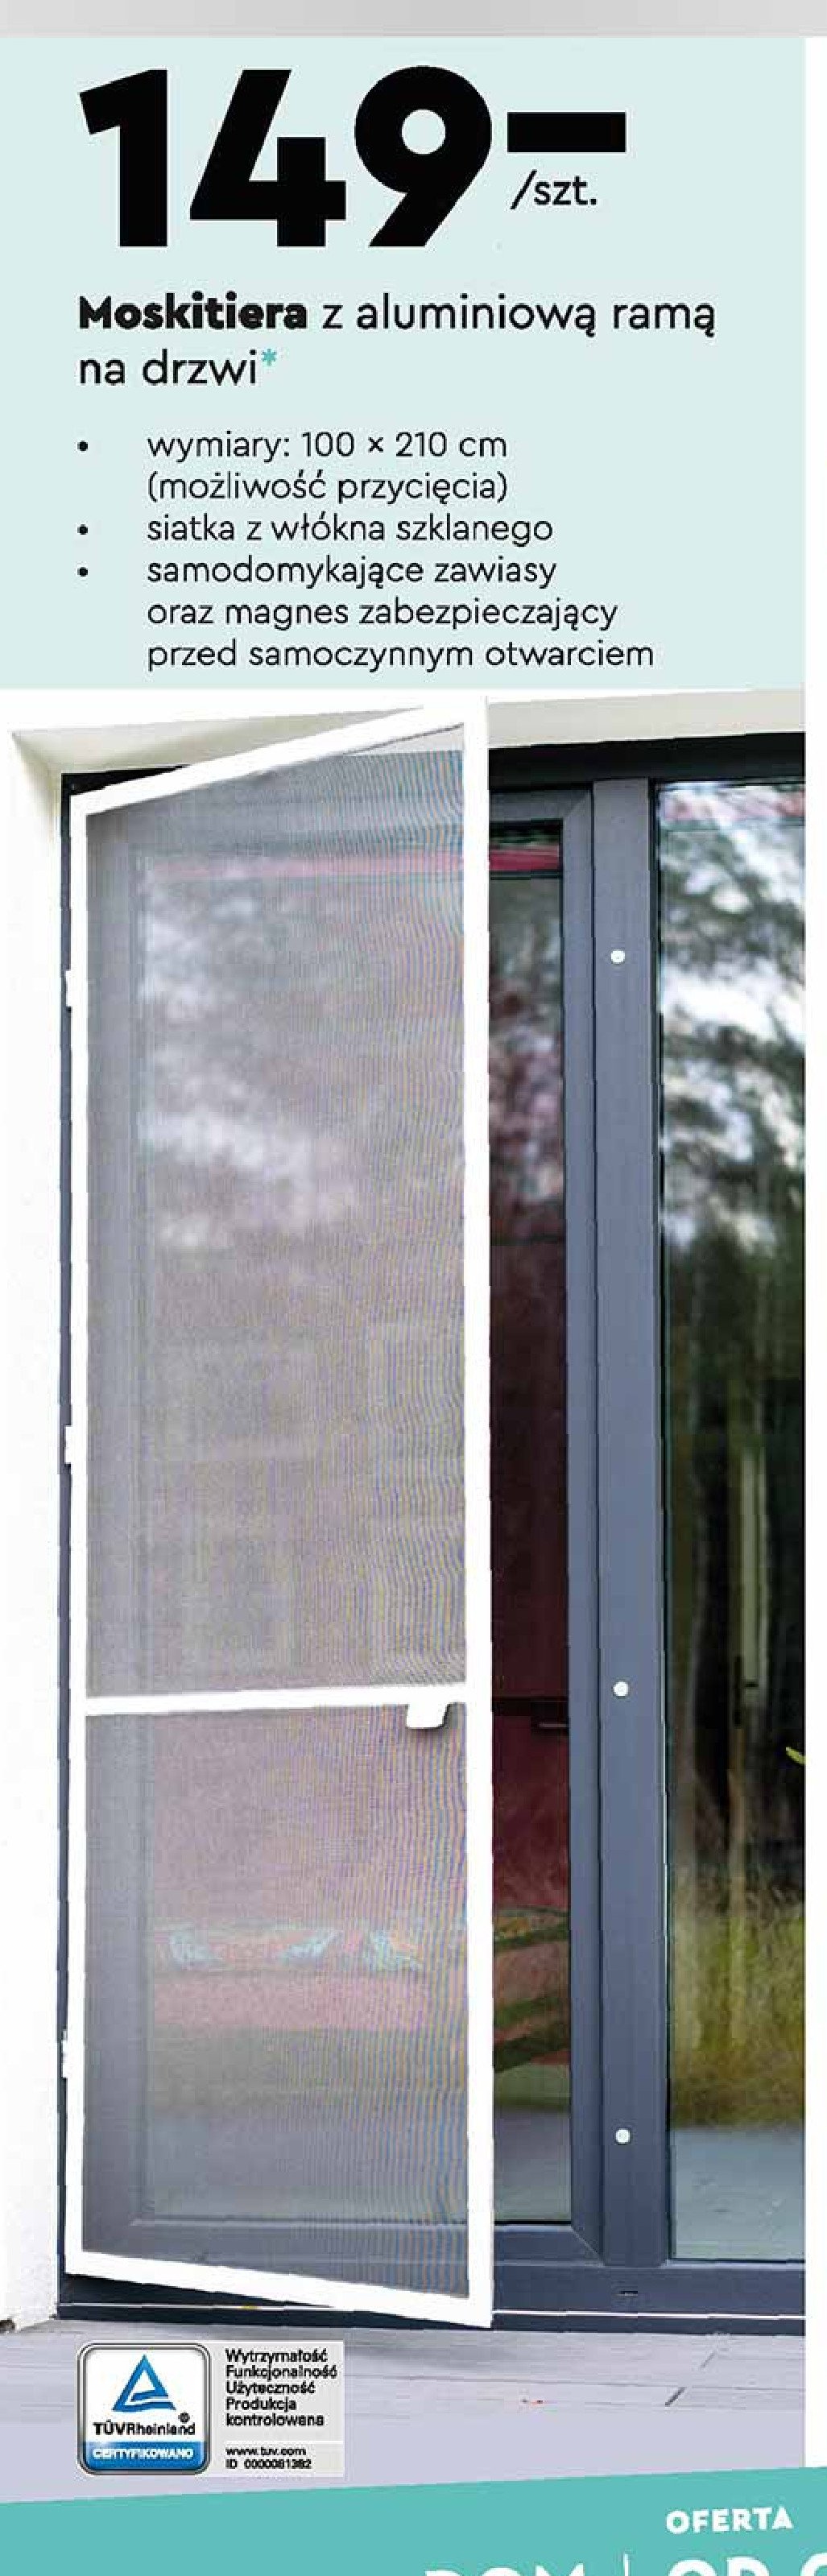 Moskitiera z aluminiową ramą na drzwi 100 x 210 cm Smukee home promocje